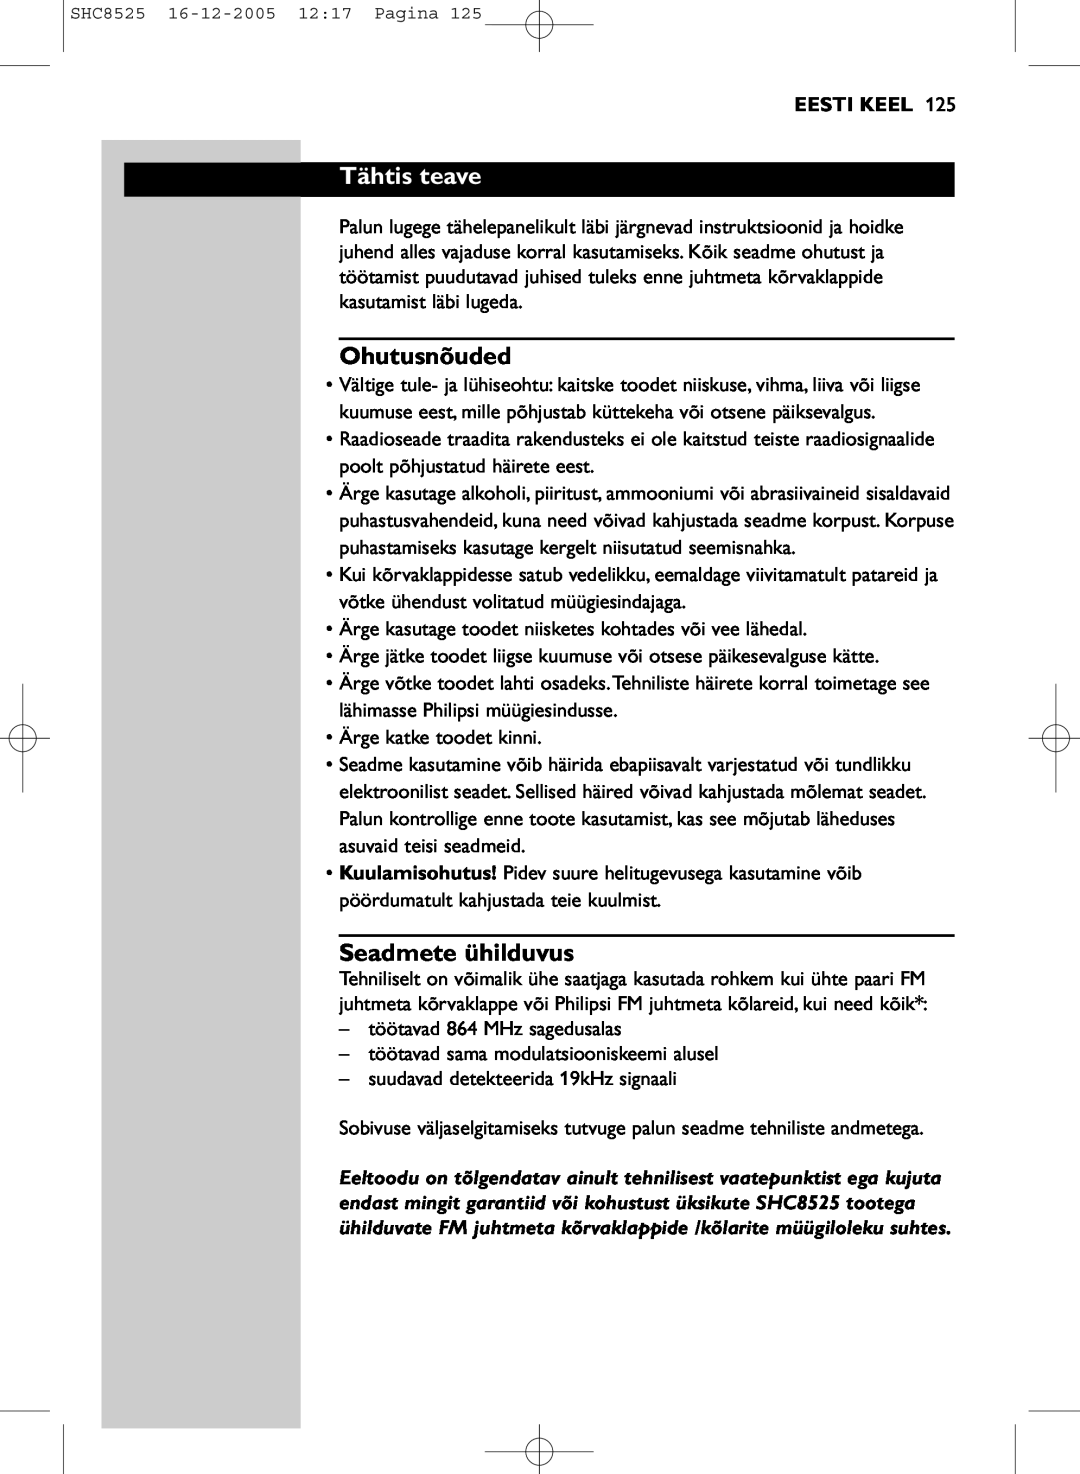 Event electronic SHC8525 manual Tähtis teave, Ohutusnõuded, Seadmete ühilduvus, Eesti Keel 